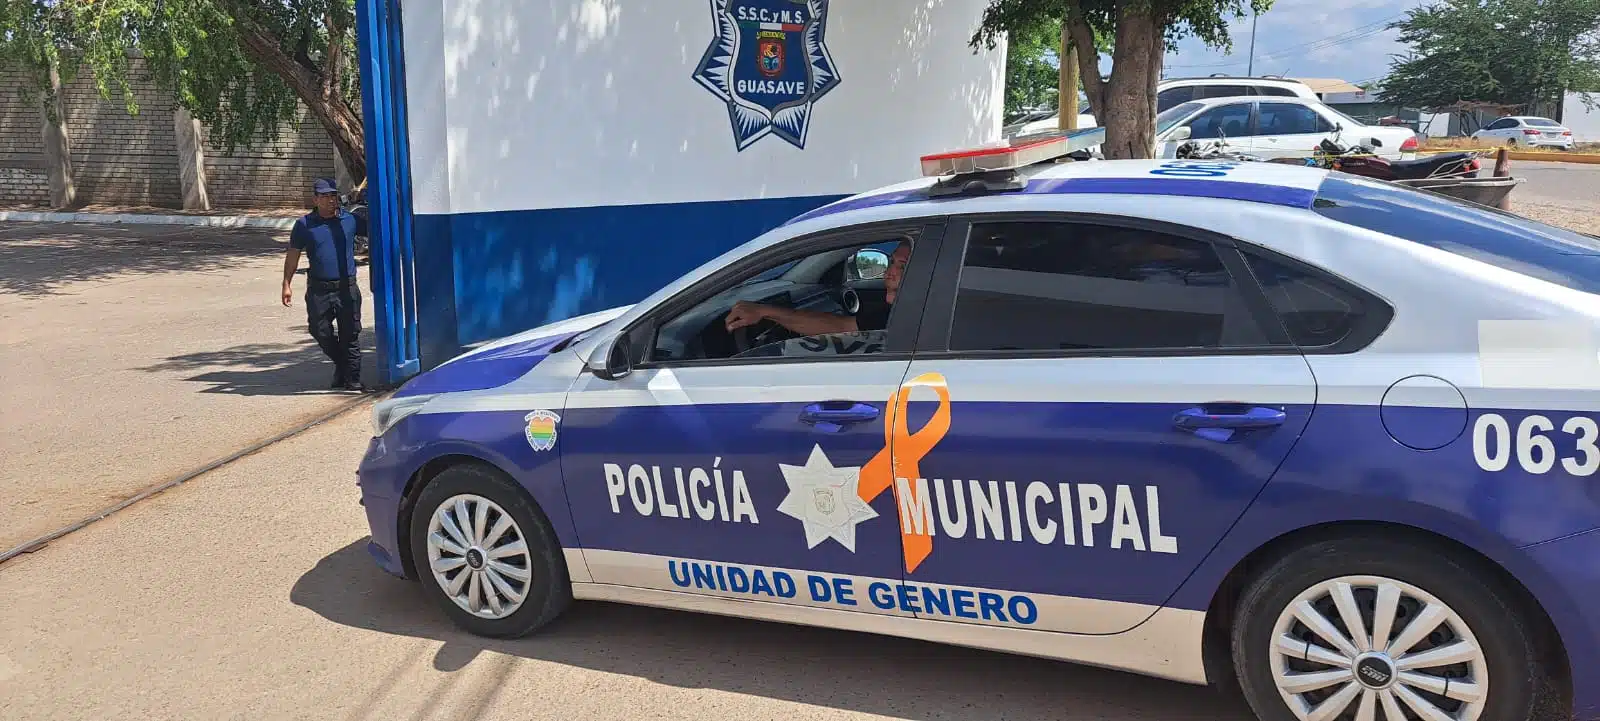 Unidad especial de género de la policía municipal de Guasave